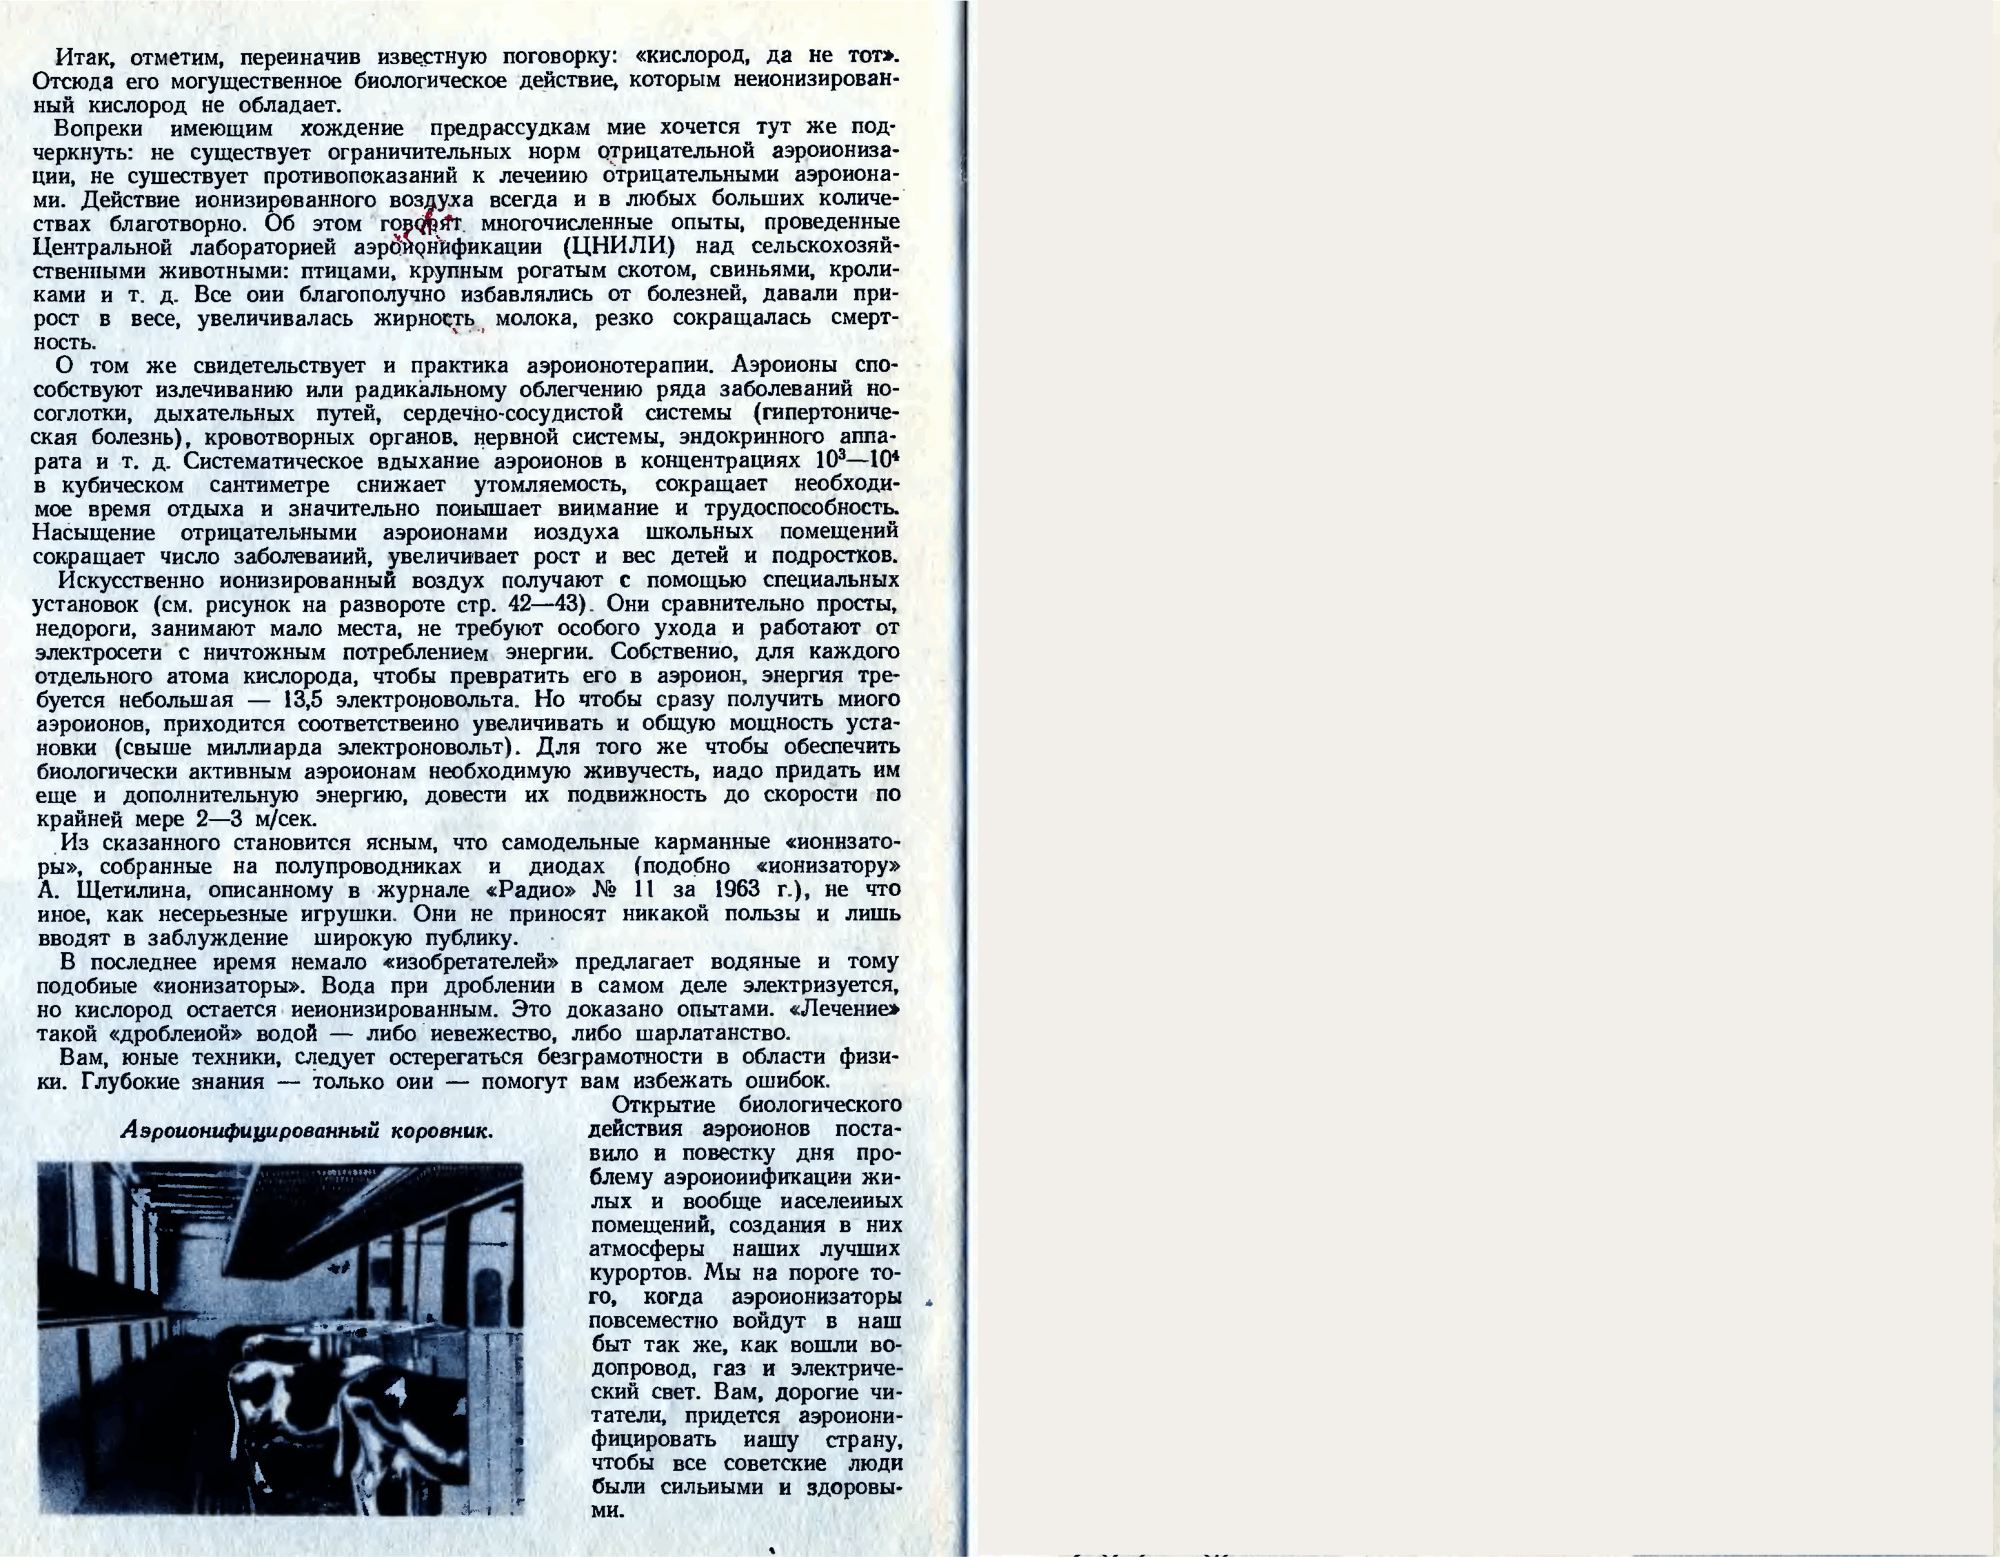 Аэроионы и жизнь. А. Чижевский. Юный техник, 1964, №3, с.41-46. Фотокопия №4